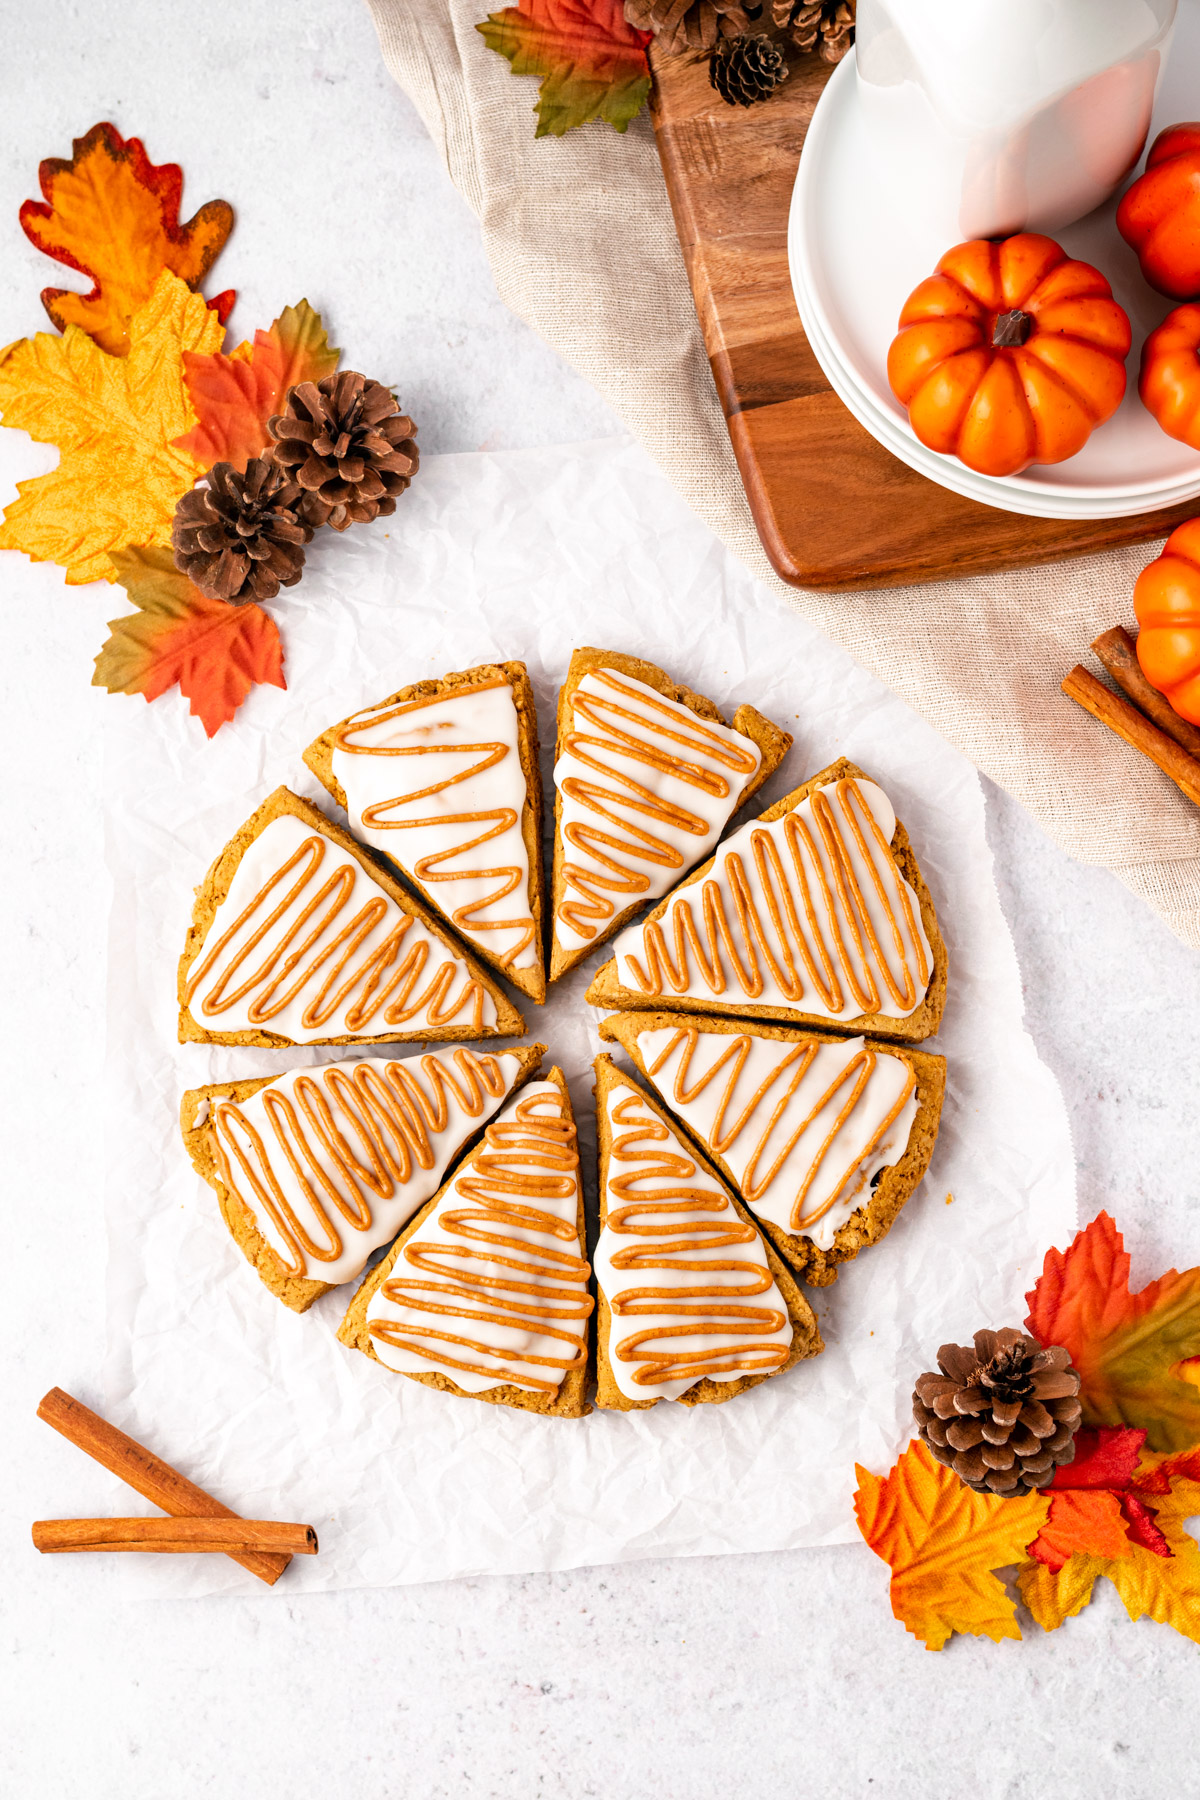 pumpkin scones in a circle